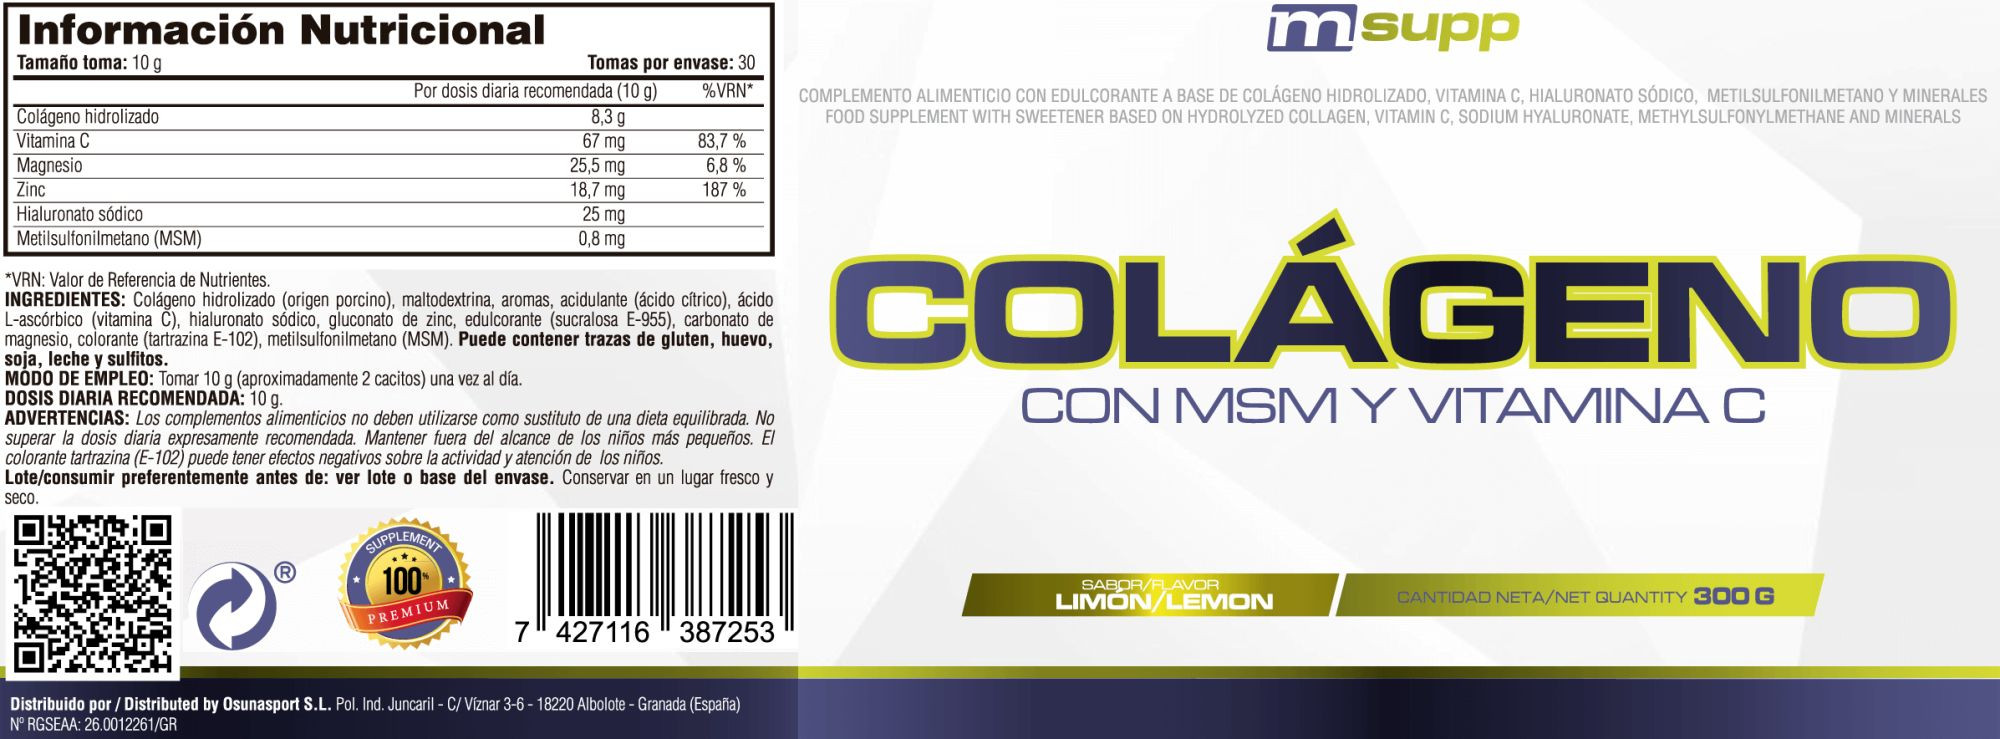 Colágeno Con Msm Y Vitamina C - 300g De Mm Supplements Sabor Limon